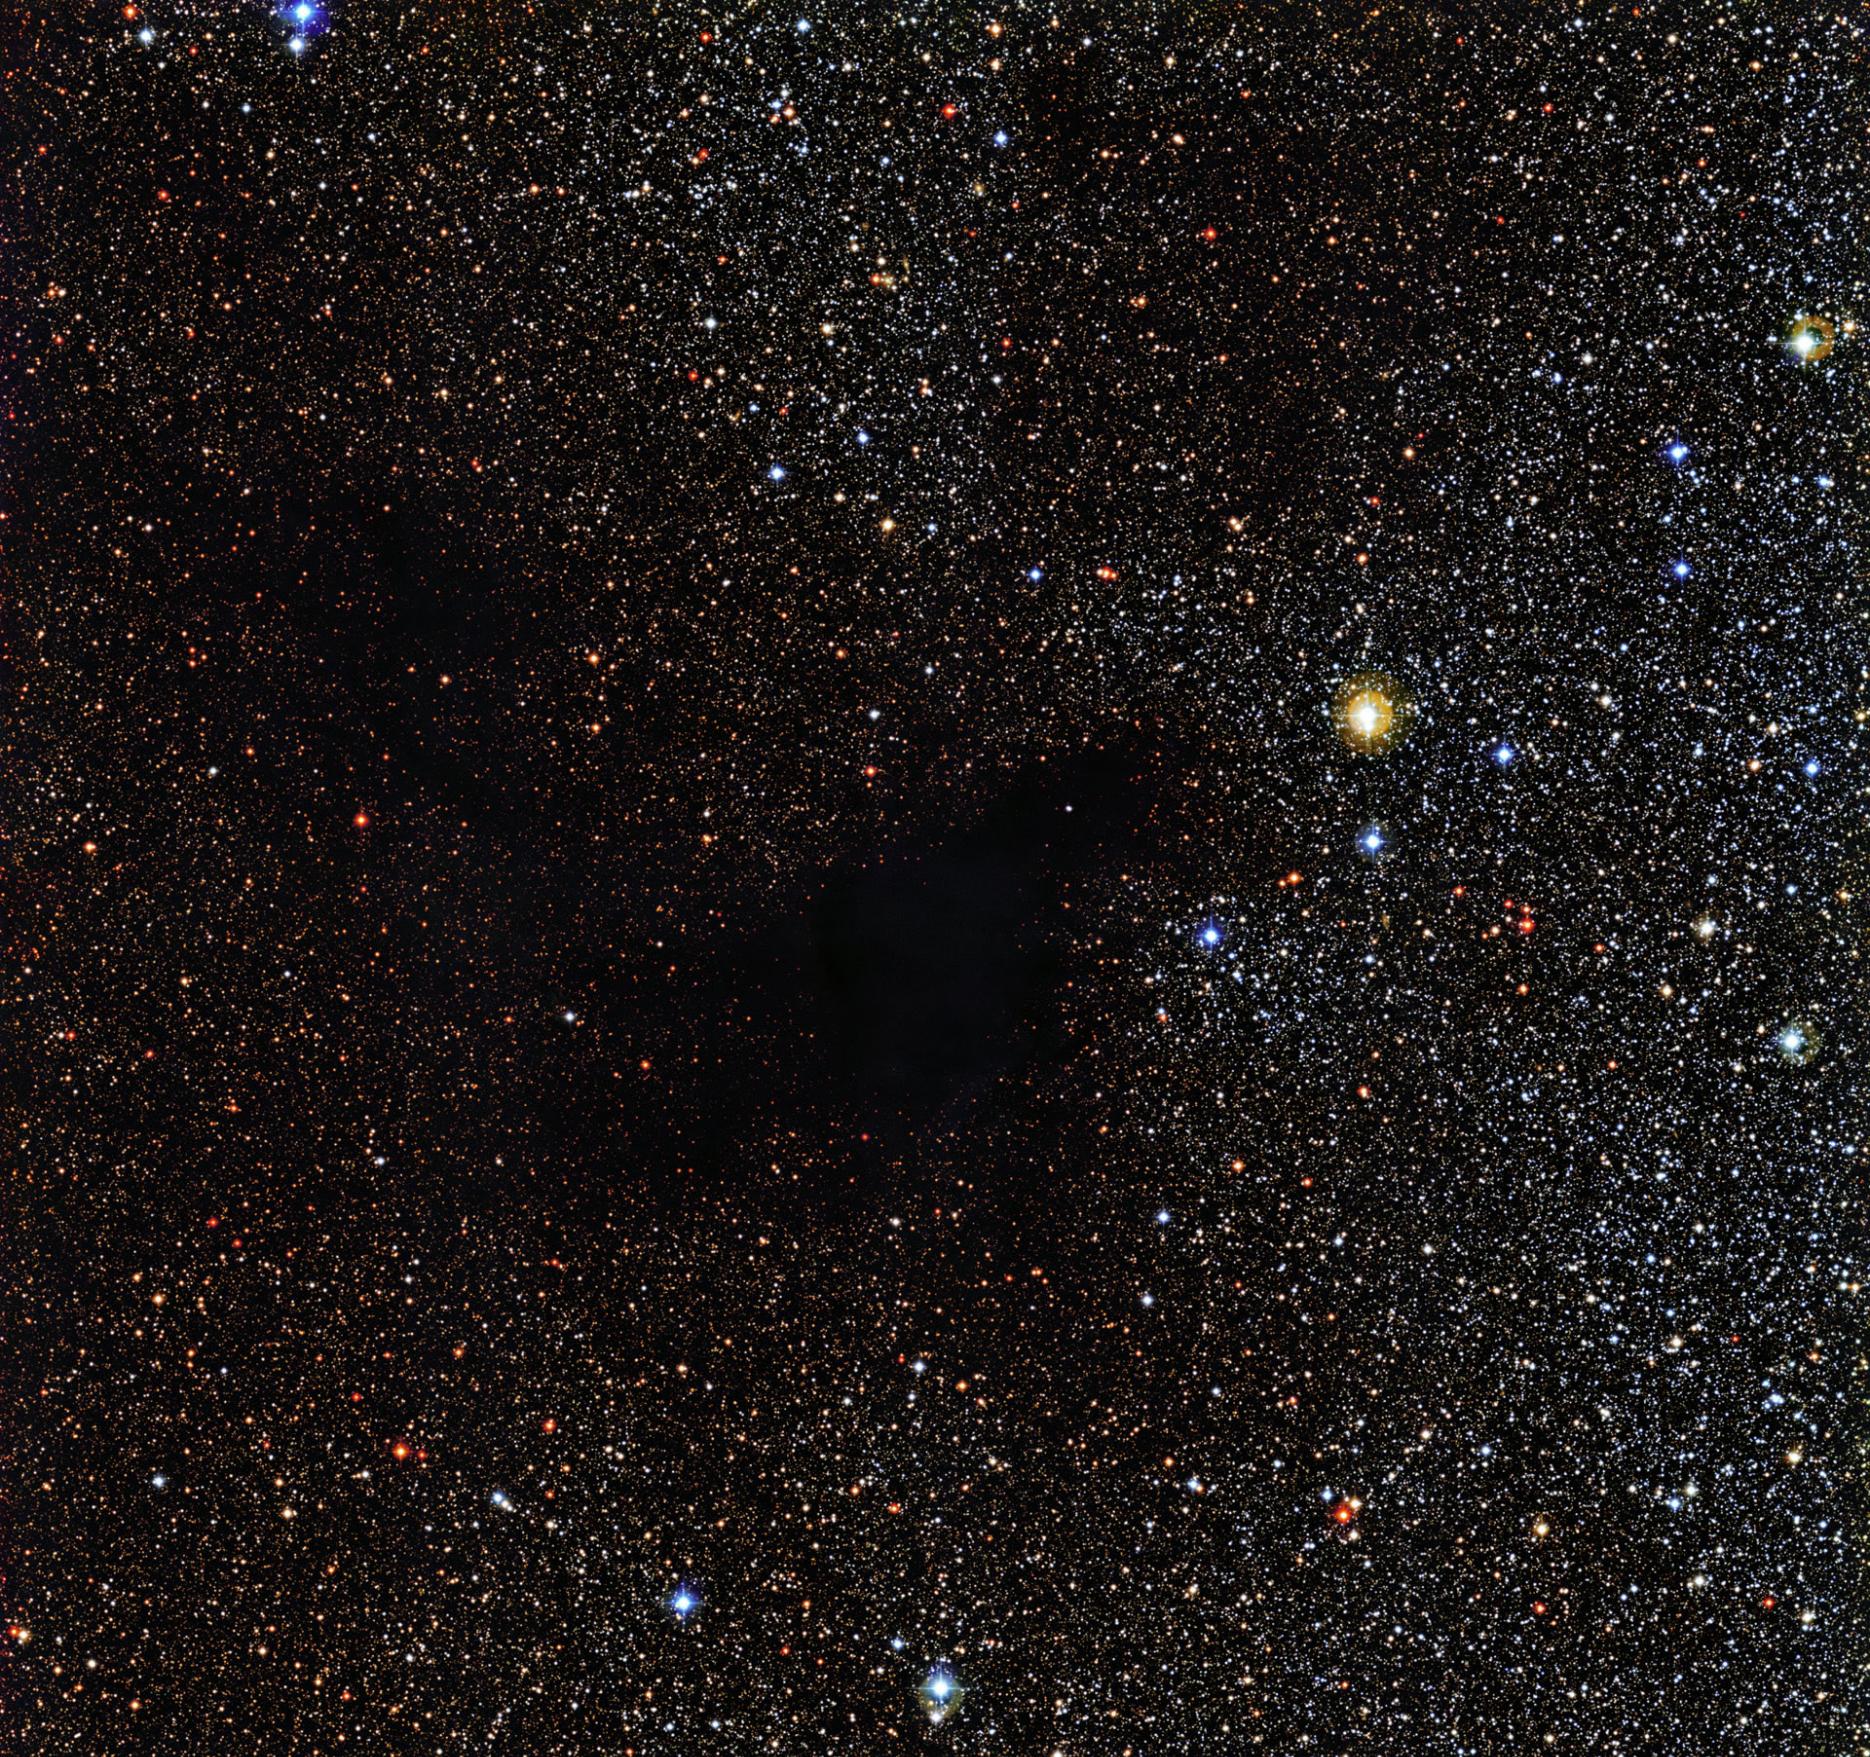 欧洲太空天文台公布巨蛇座巨型暗星云“林德暗星云483”(LDN 483)图像